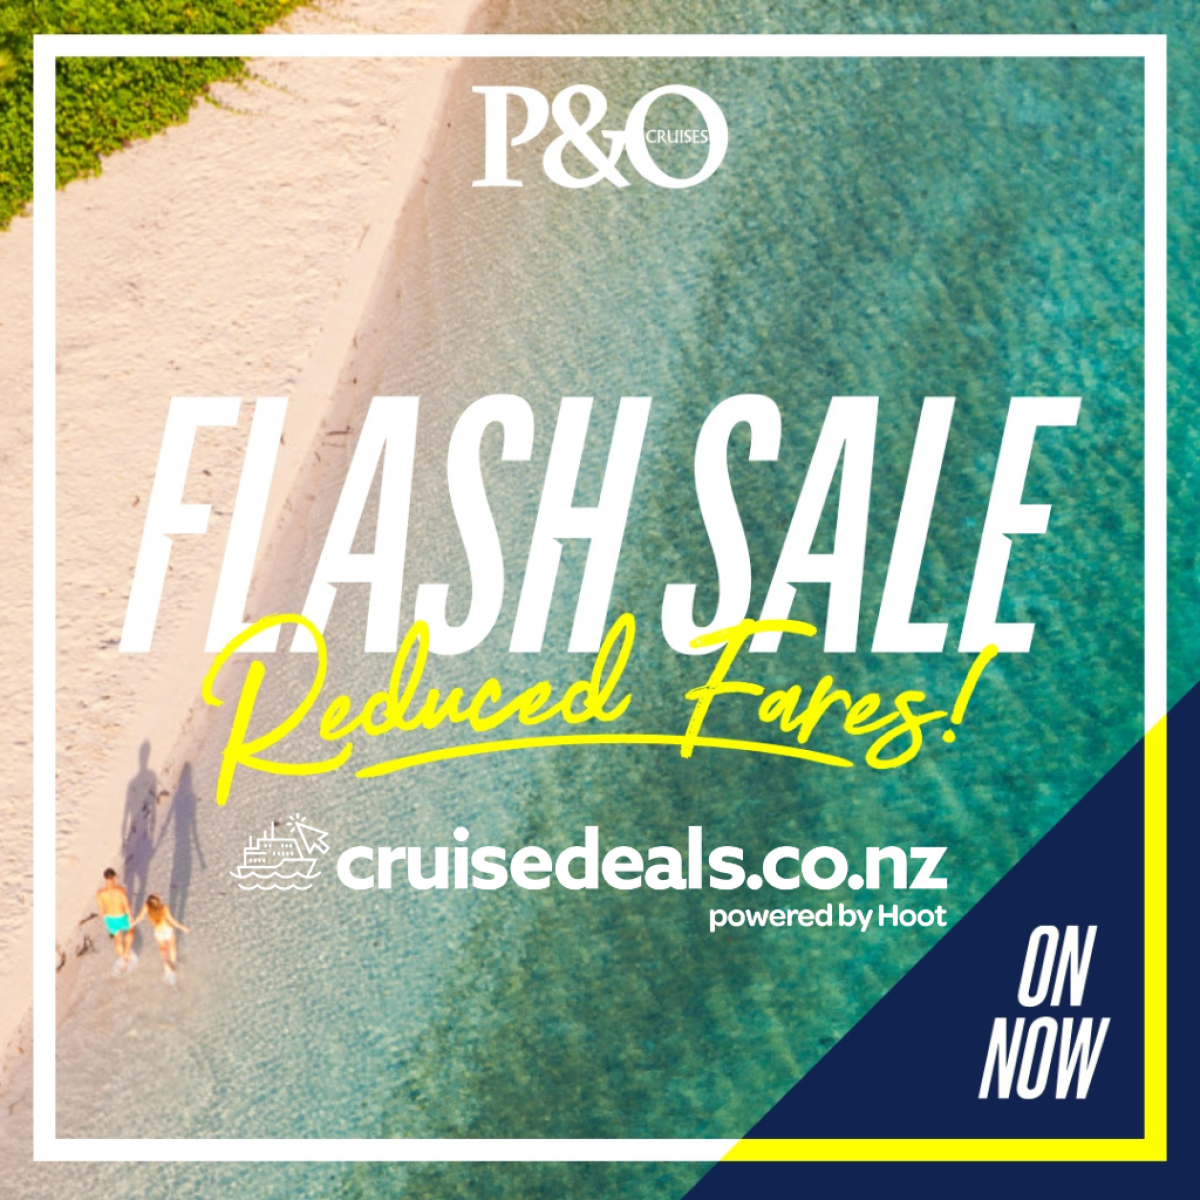 P&O Cruises 48 Hour Flash Cruise Sale